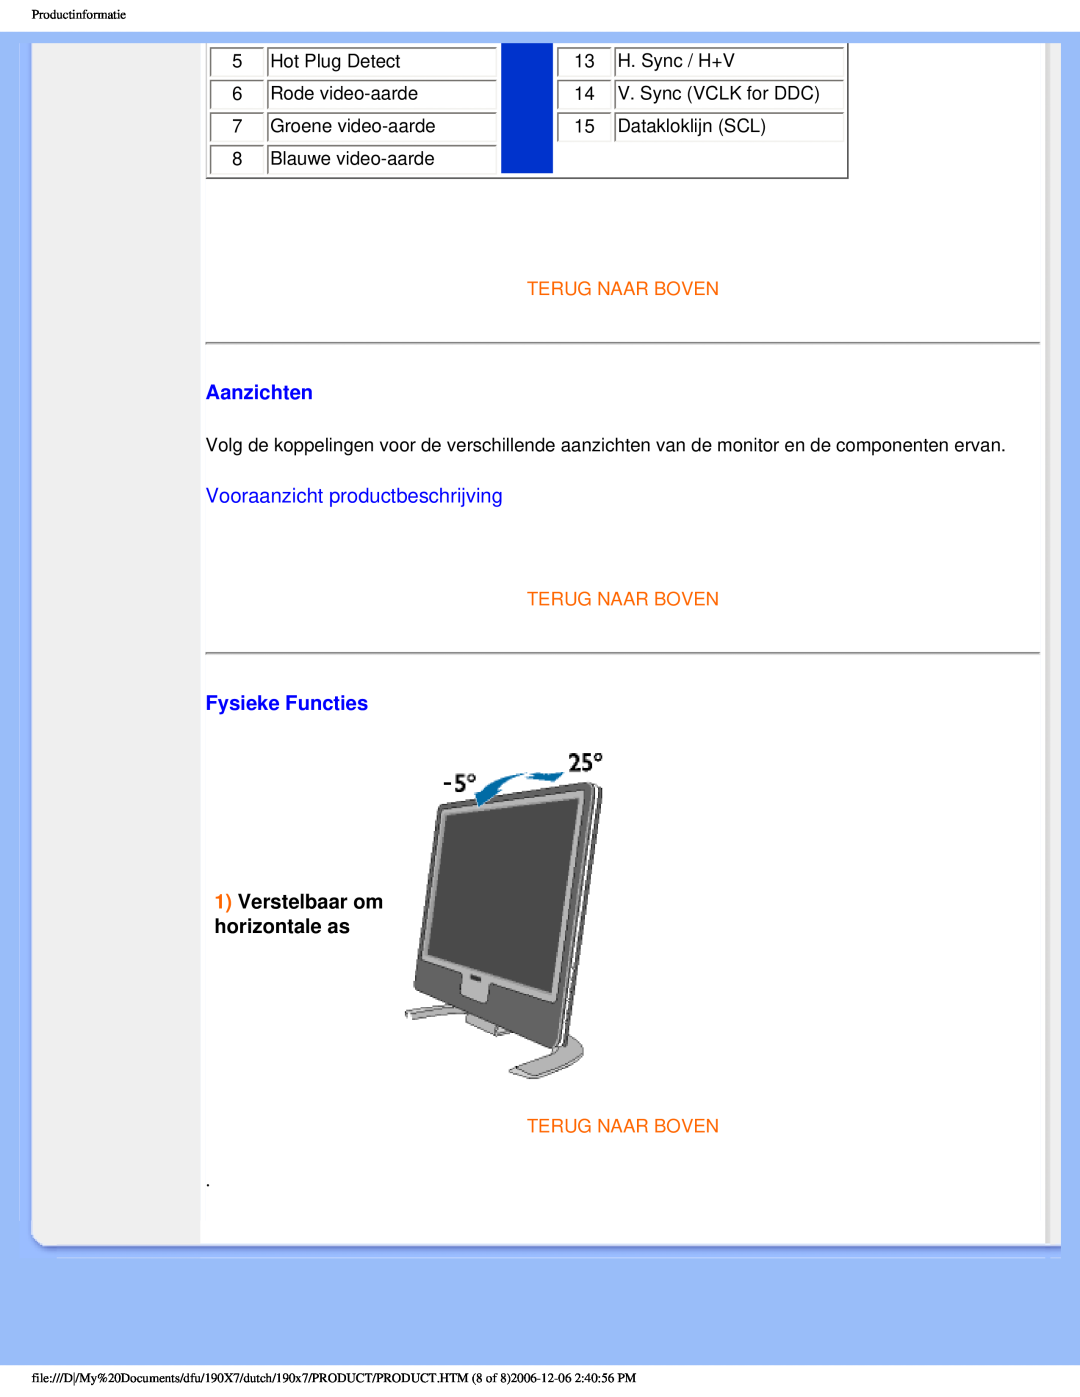 Philips 190X7 user manual Aanzichten, Vooraanzicht productbeschrijving, Fysieke Functies, 1Verstelbaar om horizontale as 